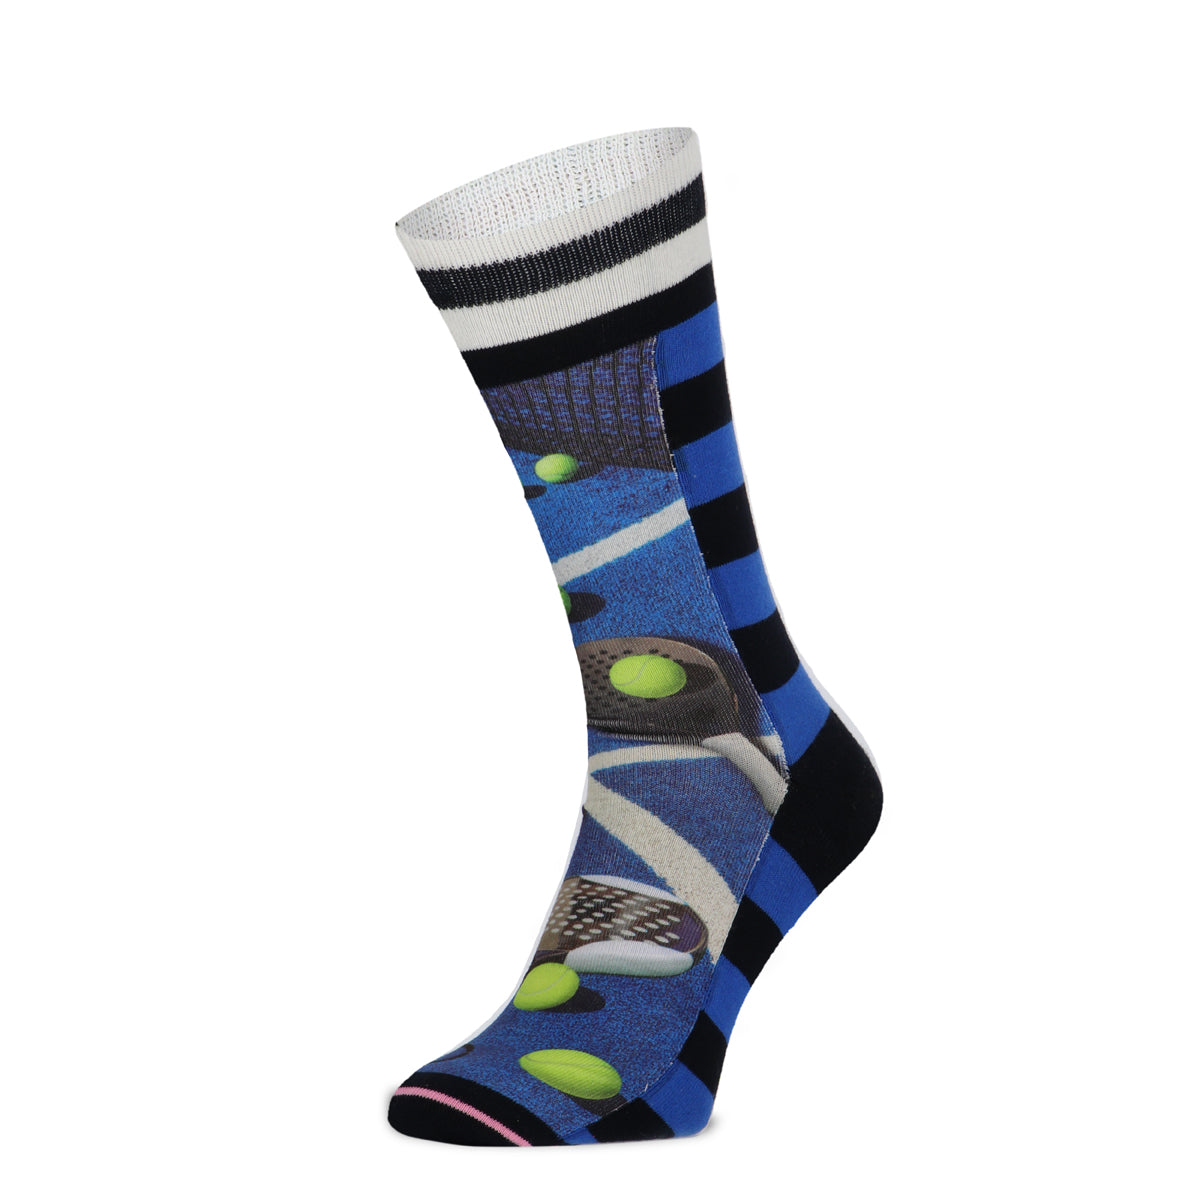 Padel men's socks